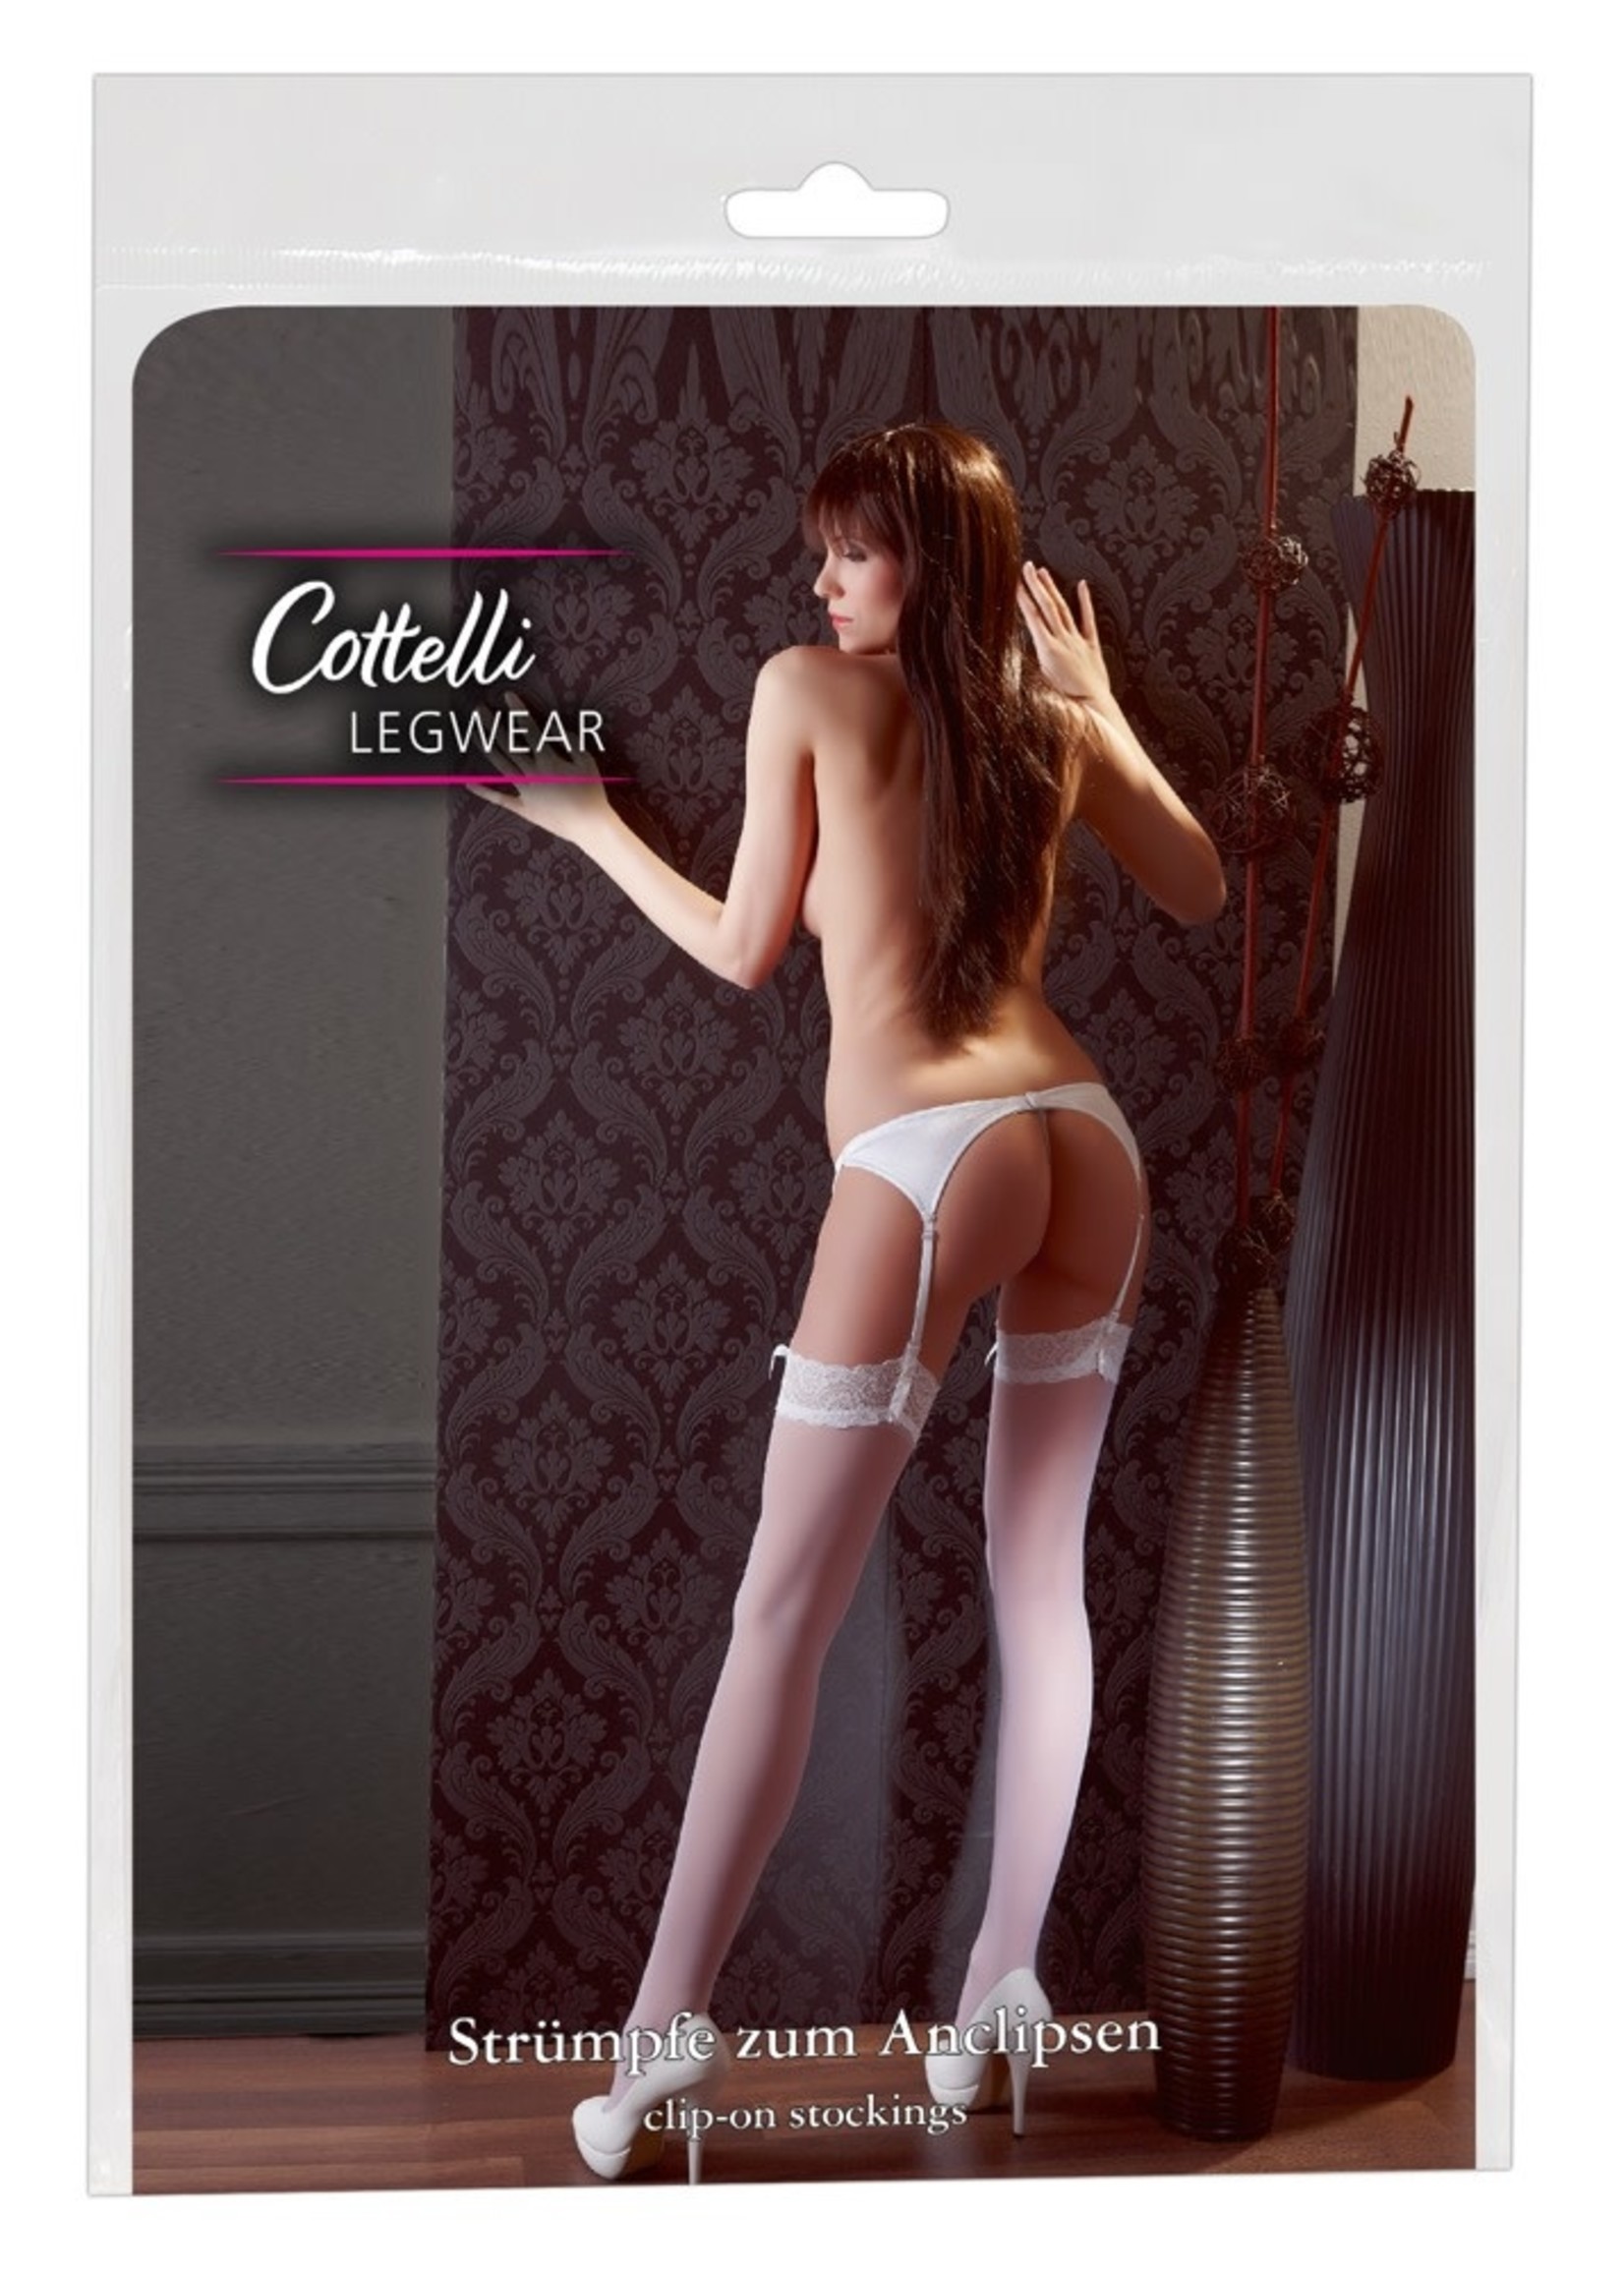 Cotteli Collection Stockings nylon white